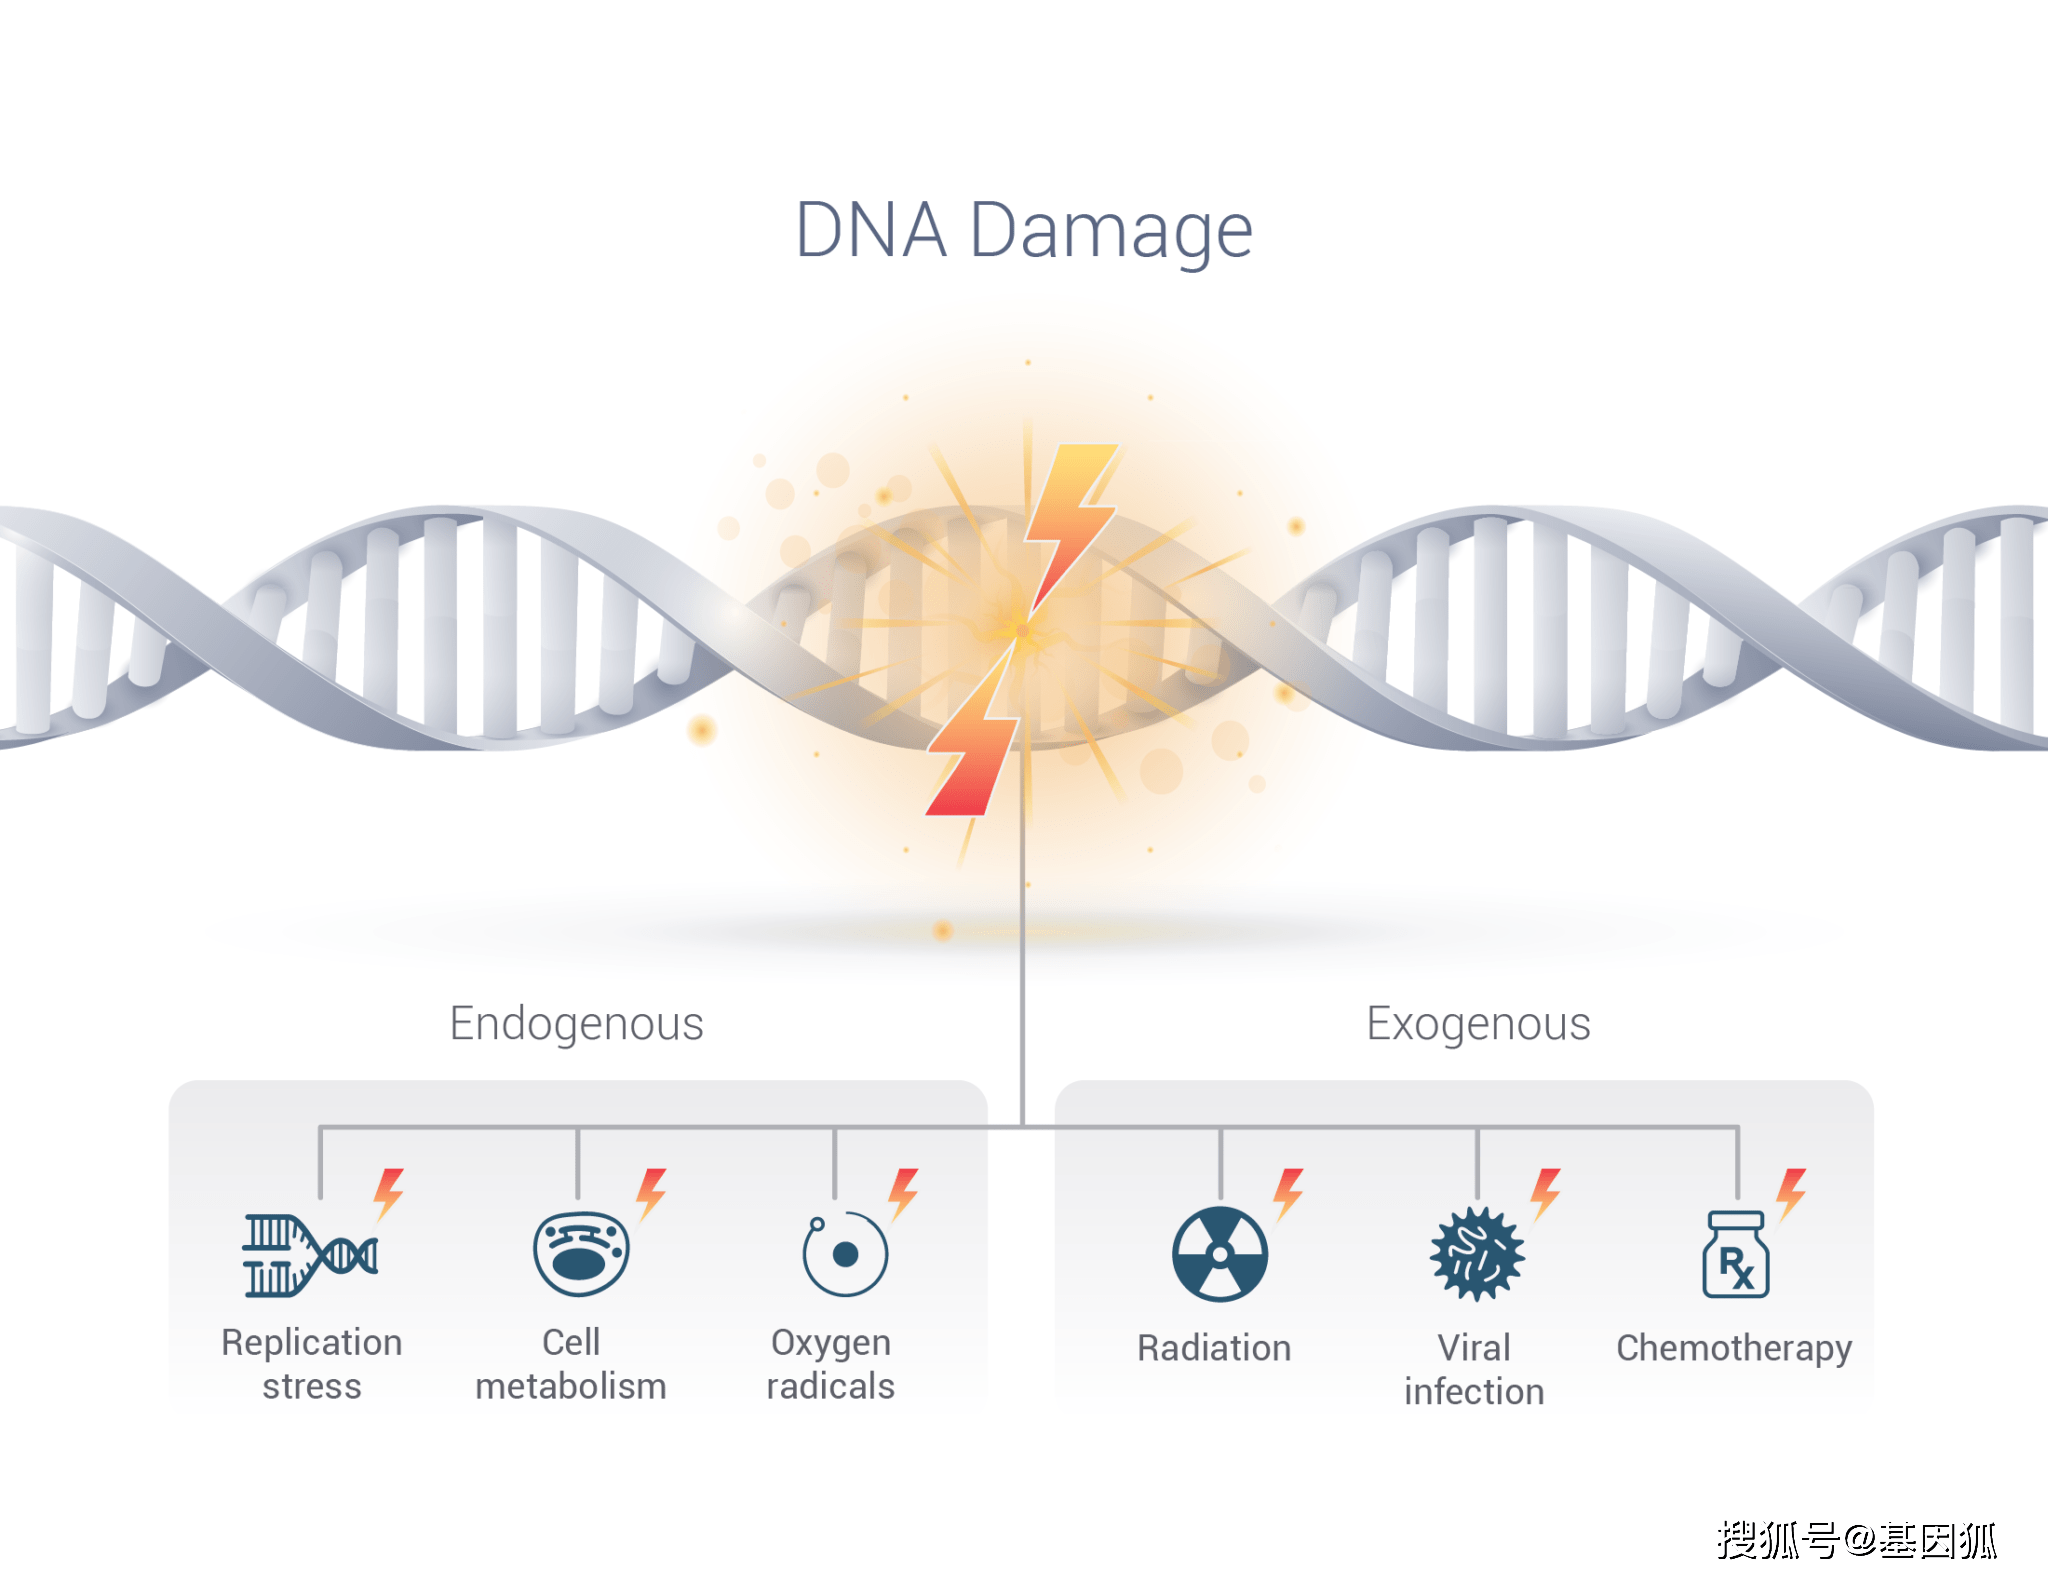 若细胞累积的dna损伤得不到正确修复,则可能引起基因突变,癌基因激活